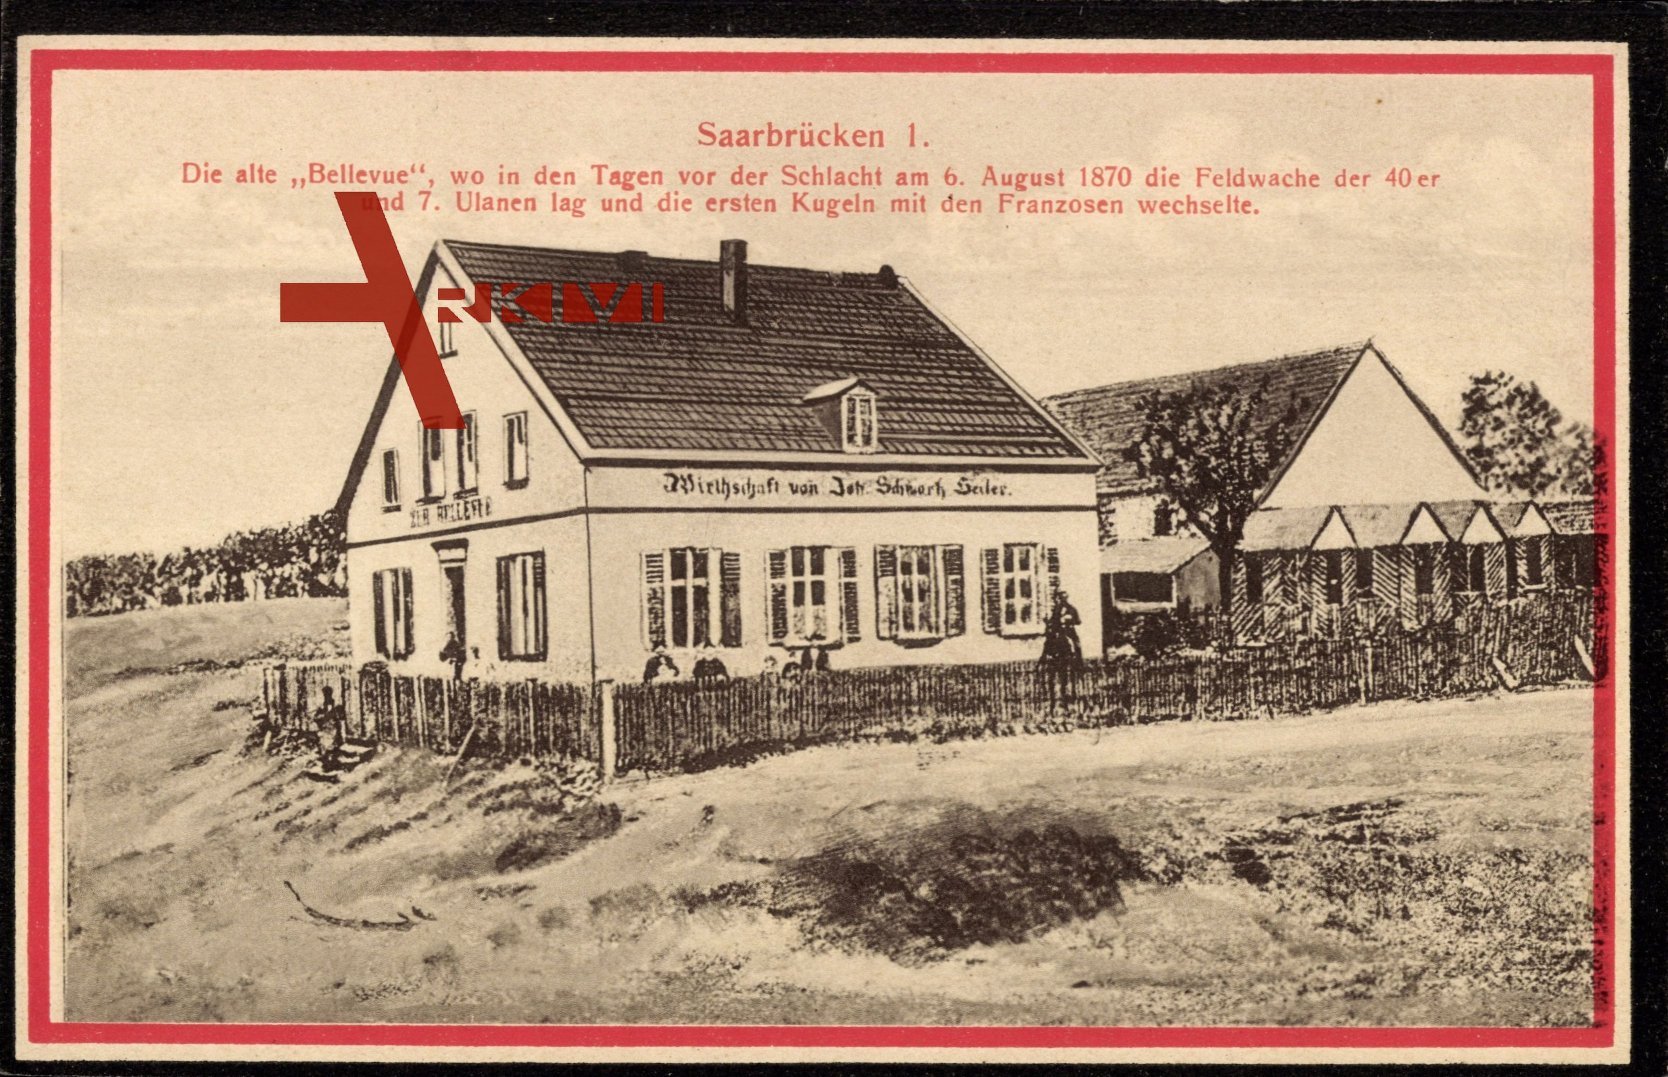 Saarbrücken, Die alte Bellevue, Feldwache 1870, Wirtschaft, Joh. Seiler